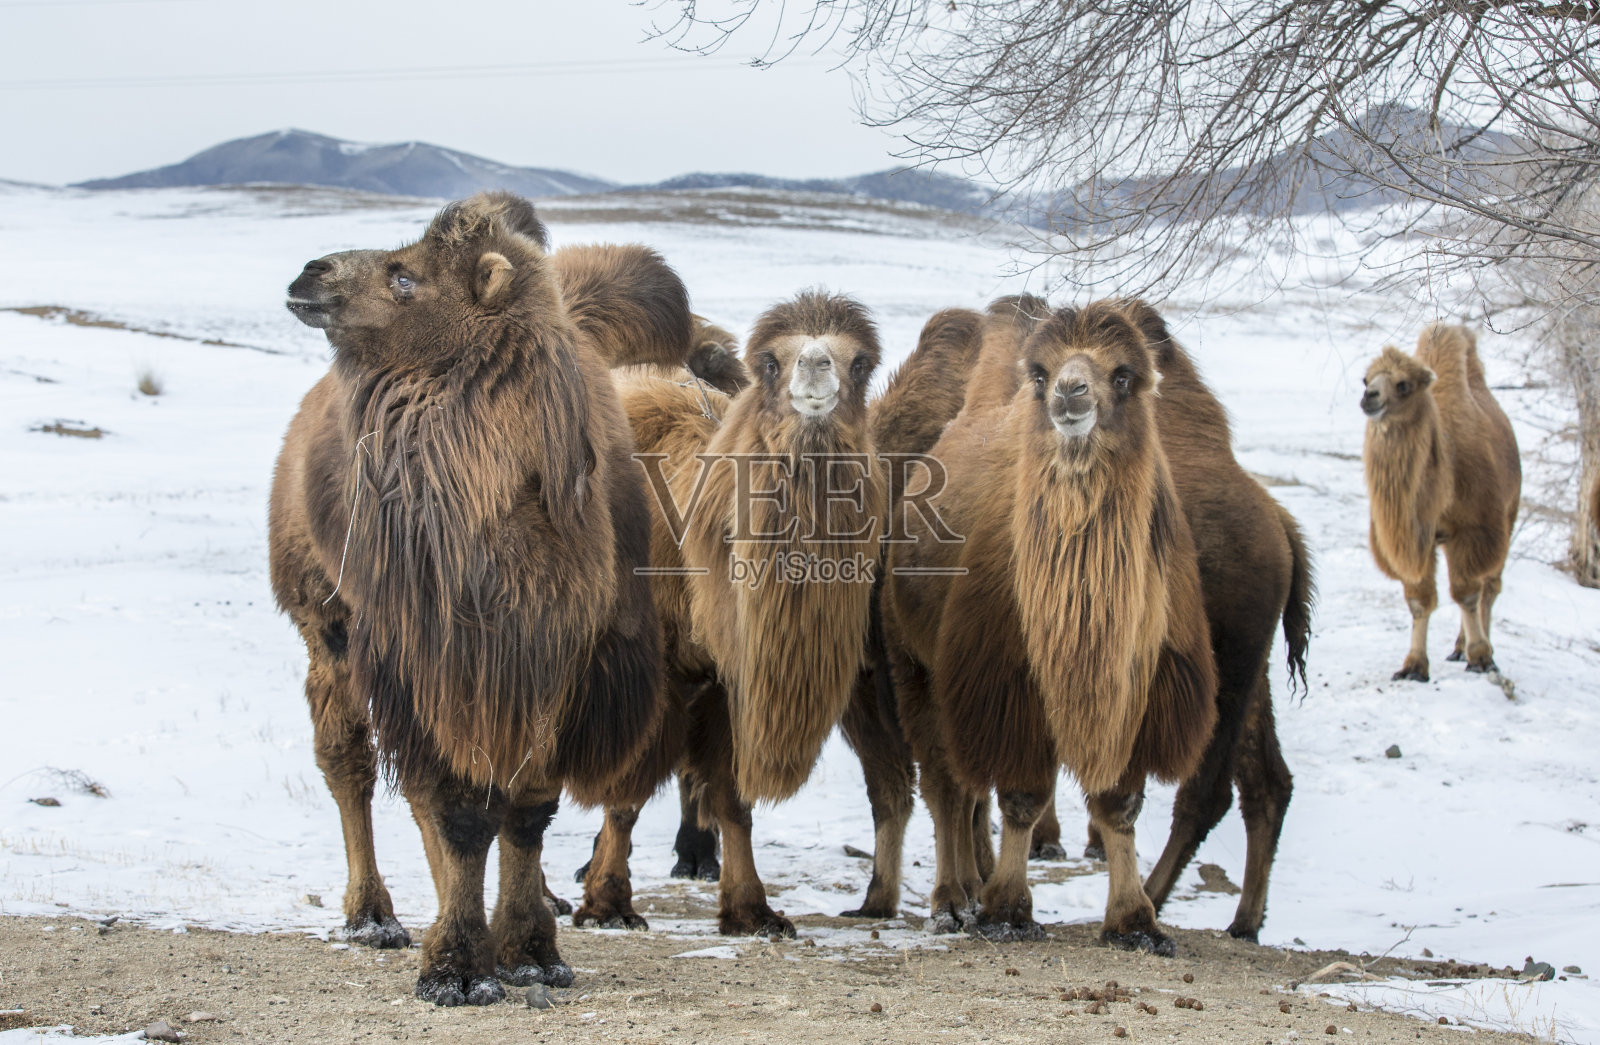 行走在蒙古北部冬季景色中的双峰驼照片摄影图片